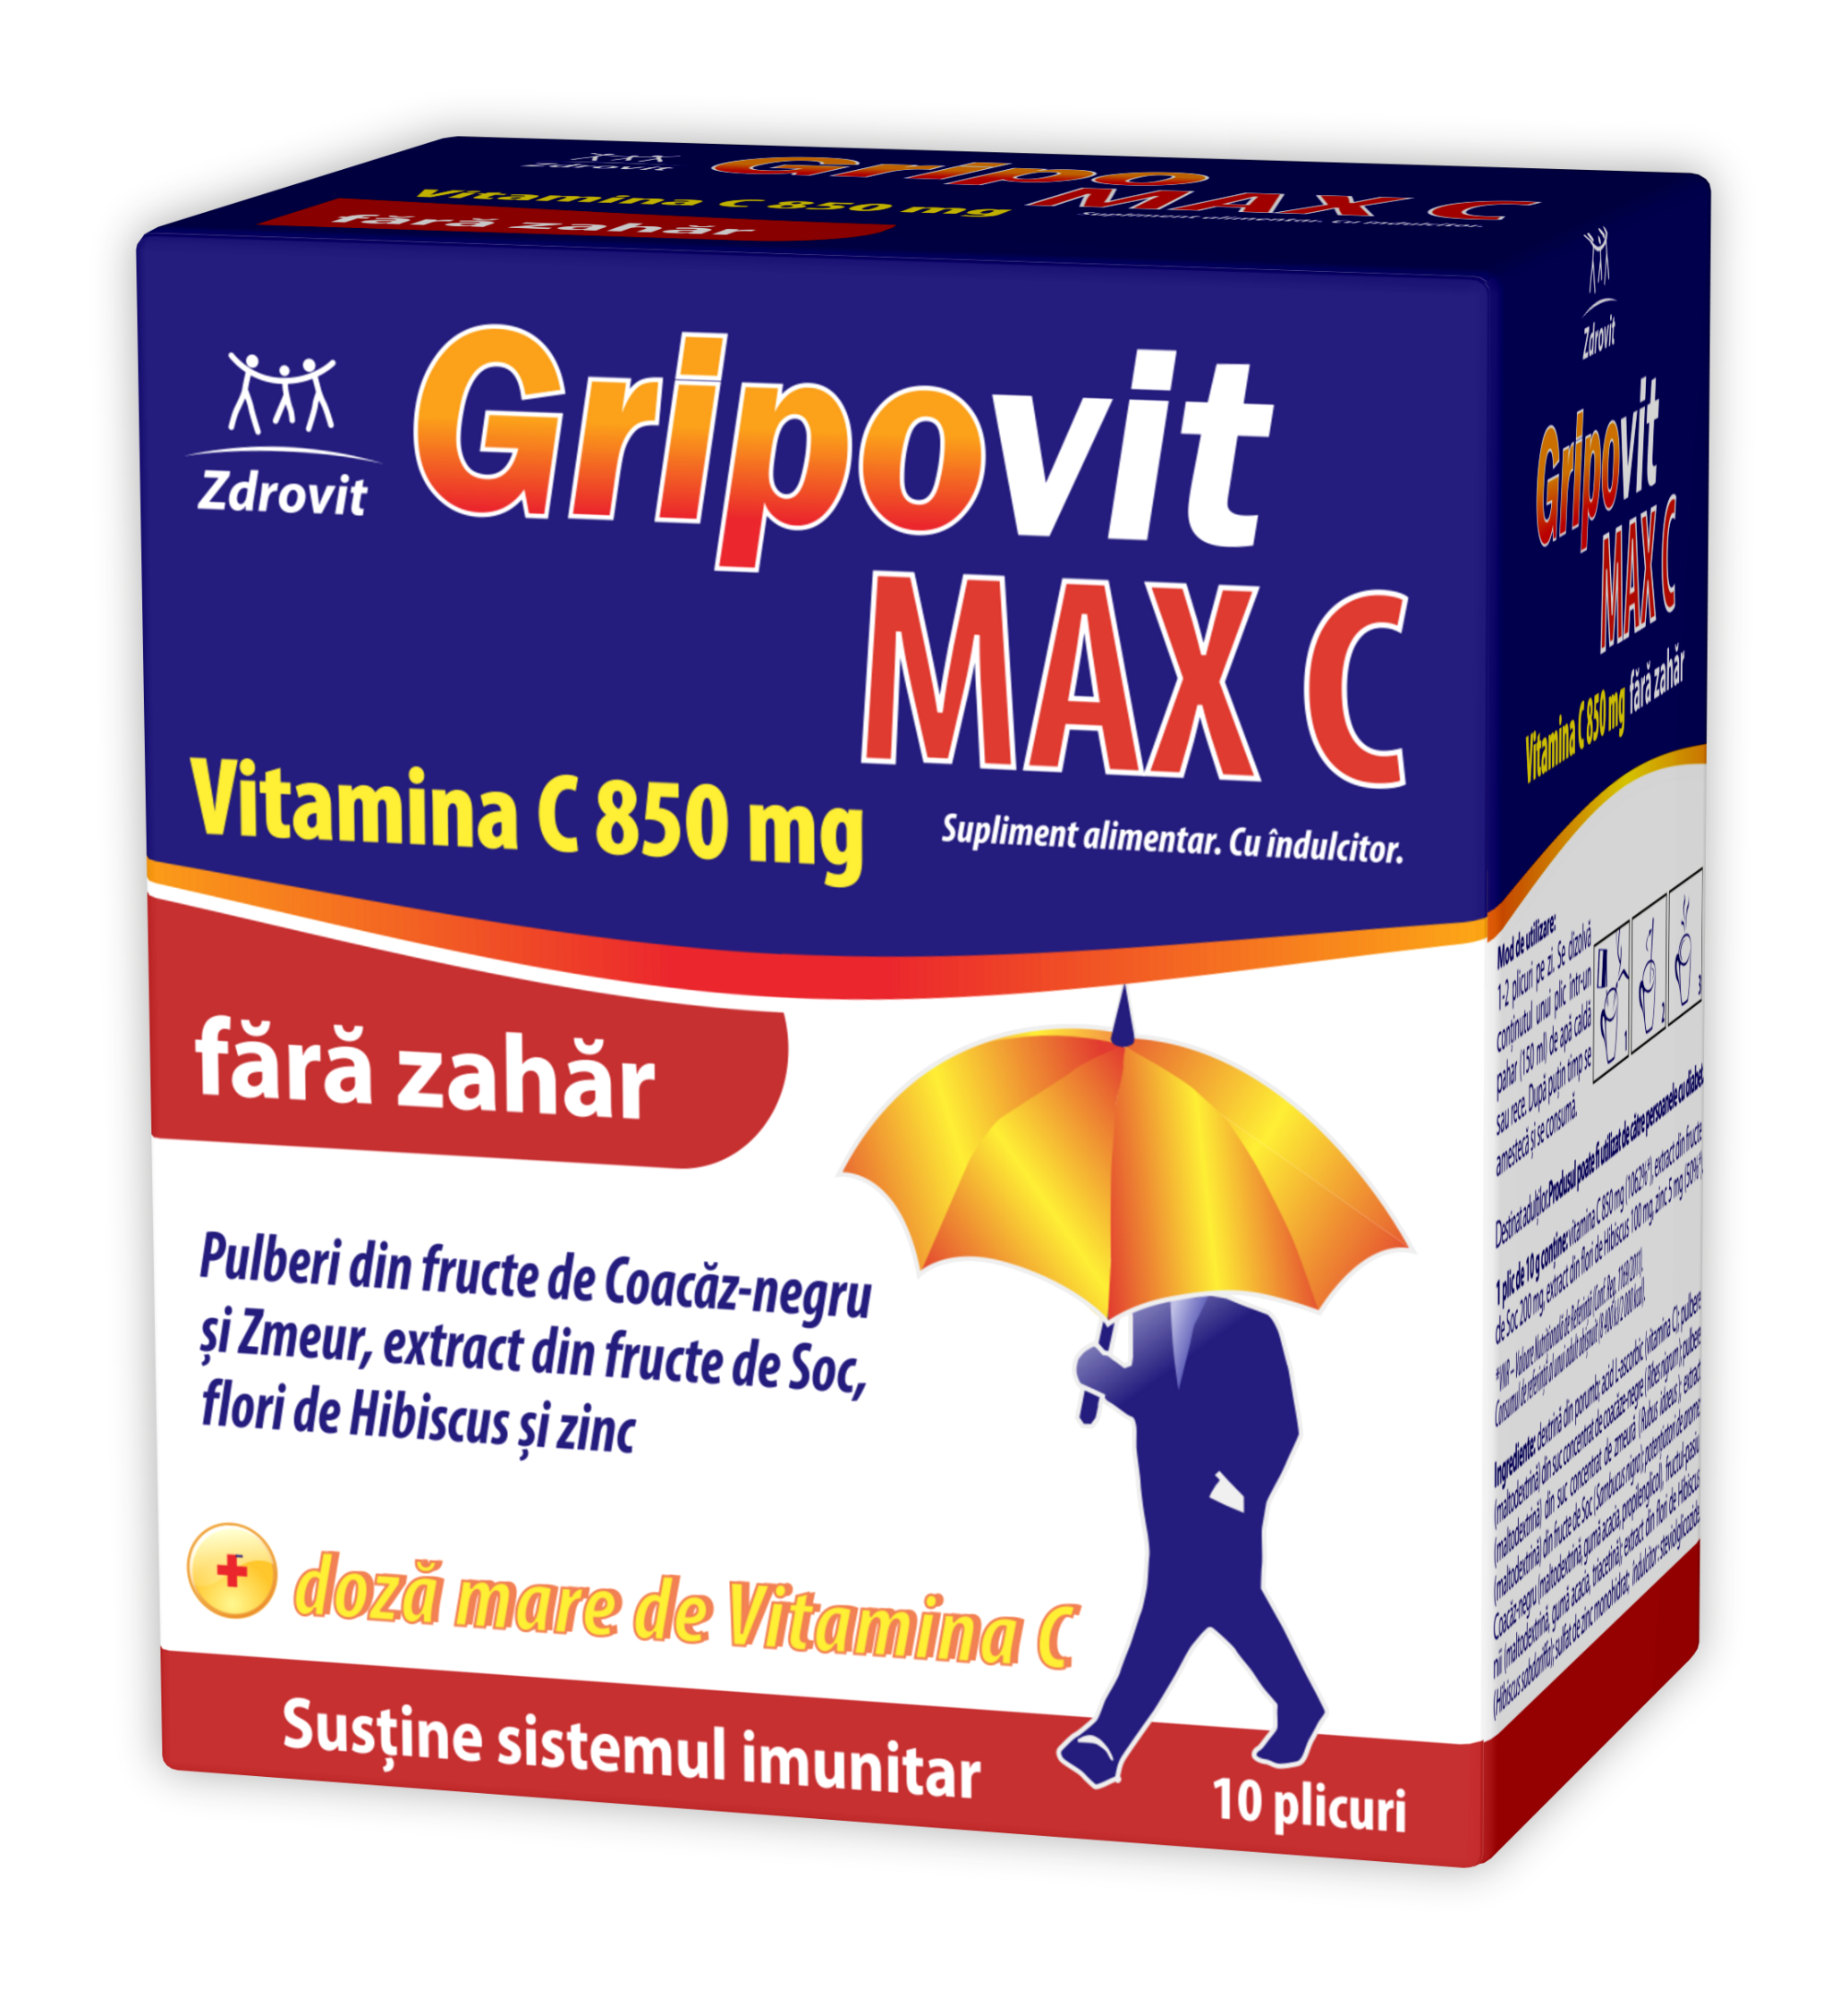 ZDROVIT GRIPOVIT MAX C FARA ZAHAR X 10 PLICURI